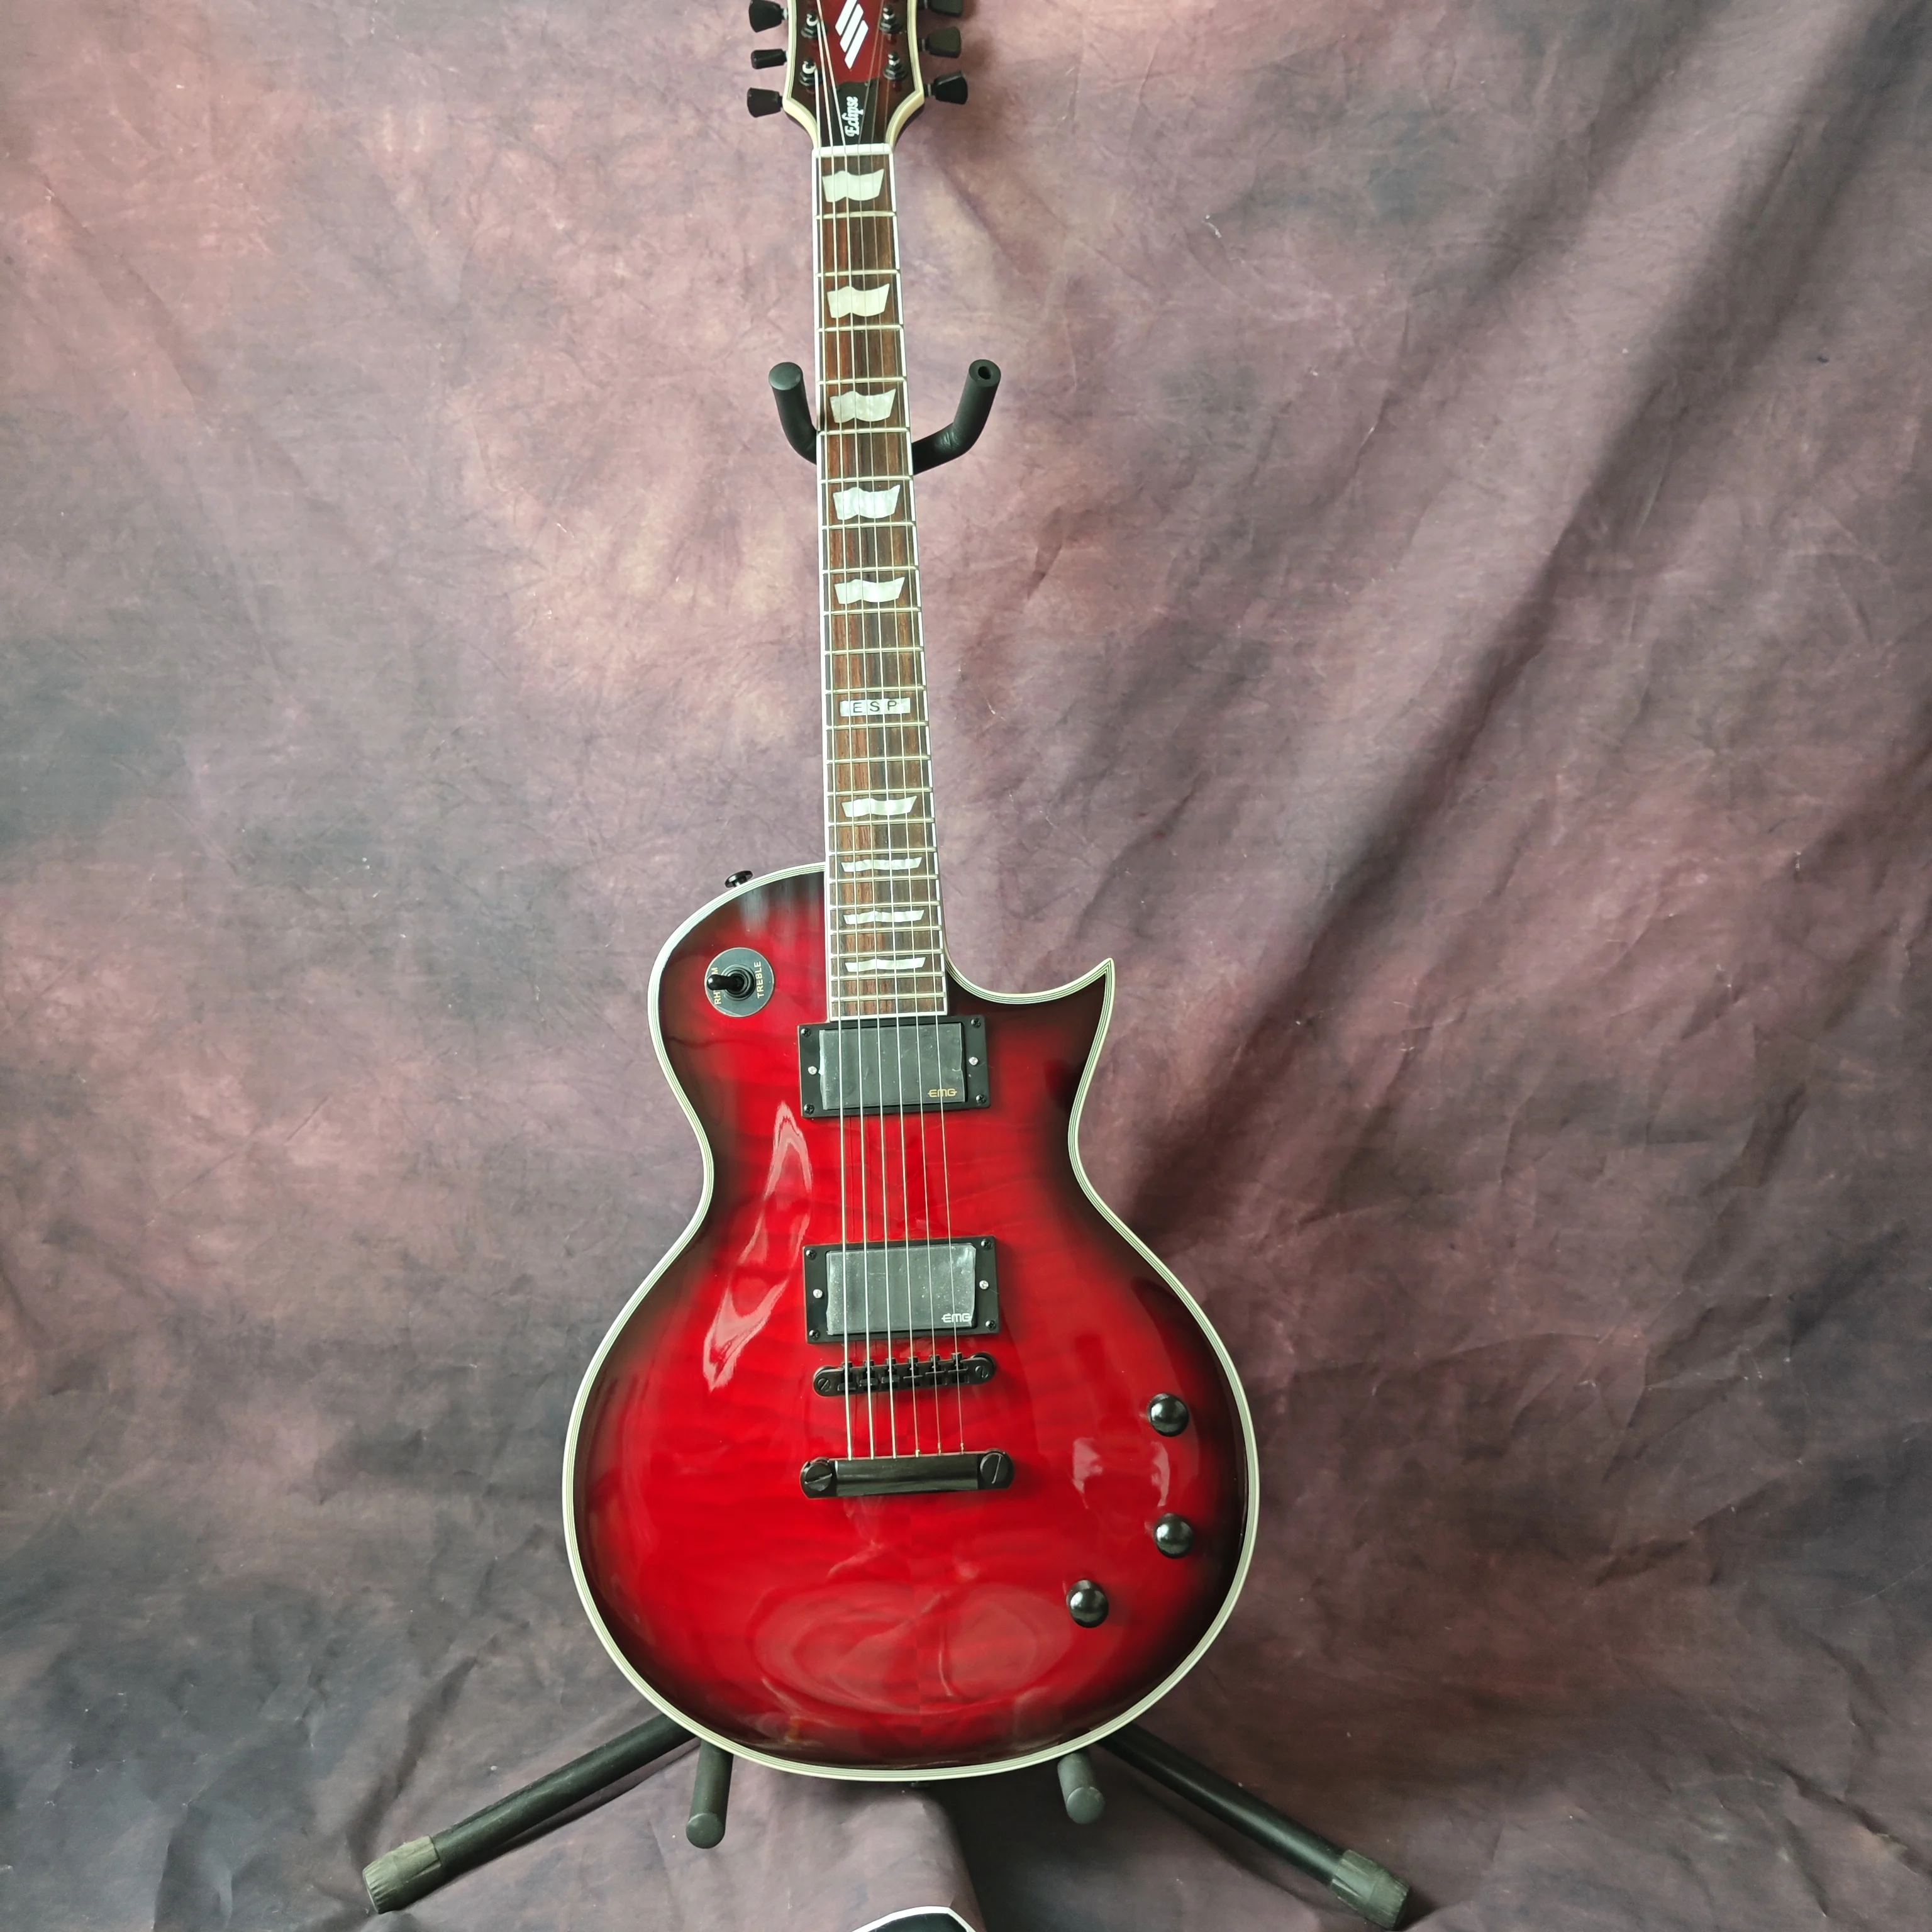 ESP vörös nagy virág elektromos gitár, bolyhos juhar top, barackvirág fa test, rózsa fa fingerboard, testreszabott gyári - 0